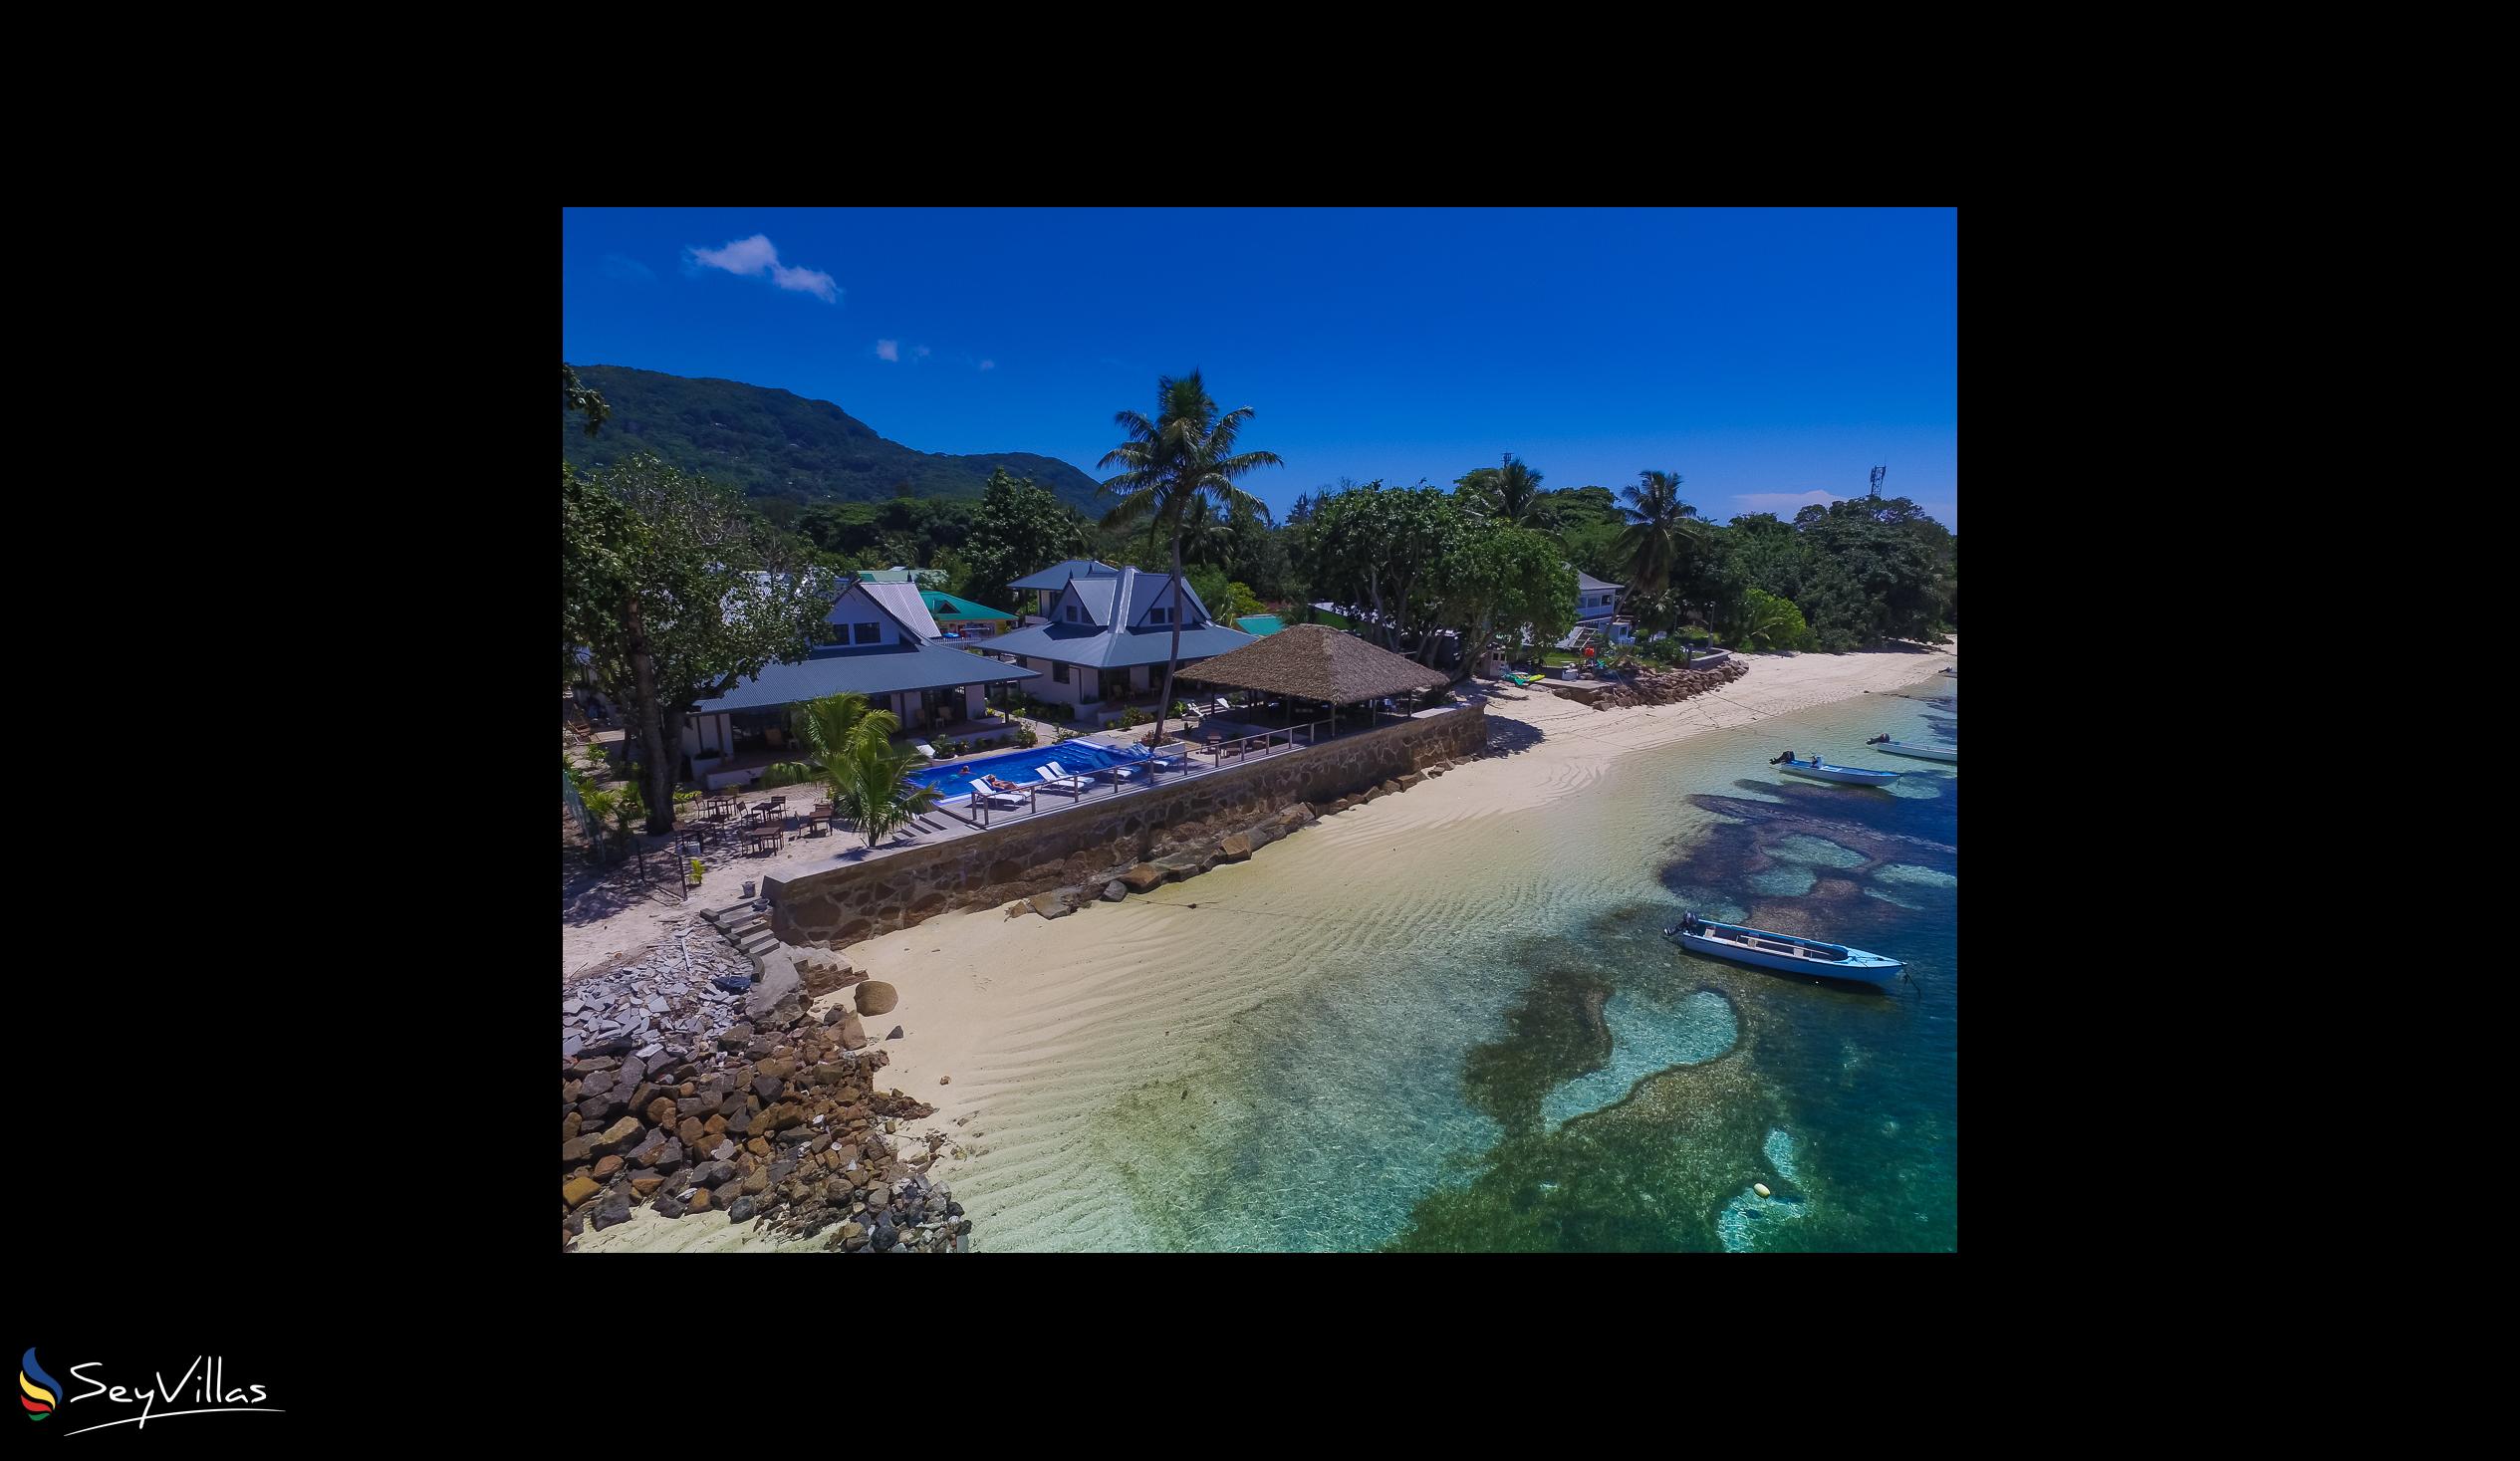 Foto 54: Le Nautique Luxury Waterfront Hotel - Aussenbereich - La Digue (Seychellen)